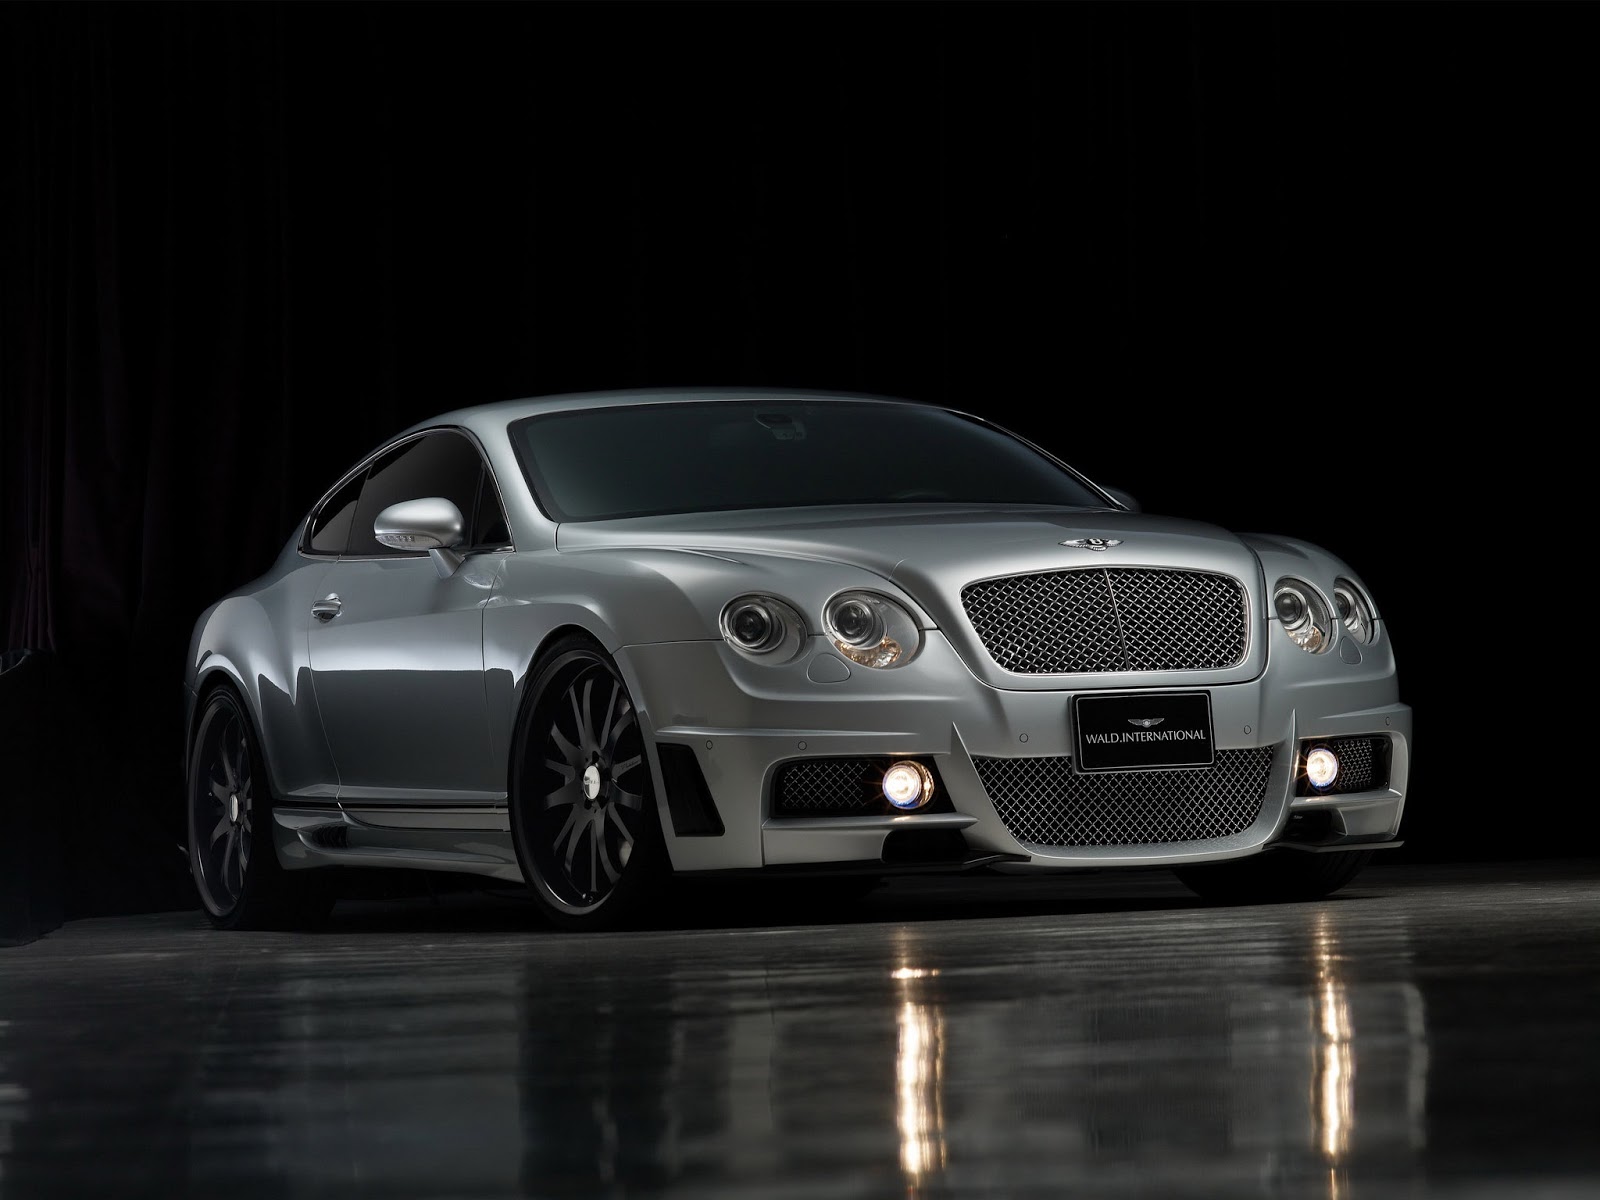 Cool Bentley Car Widescreen Desktop Image